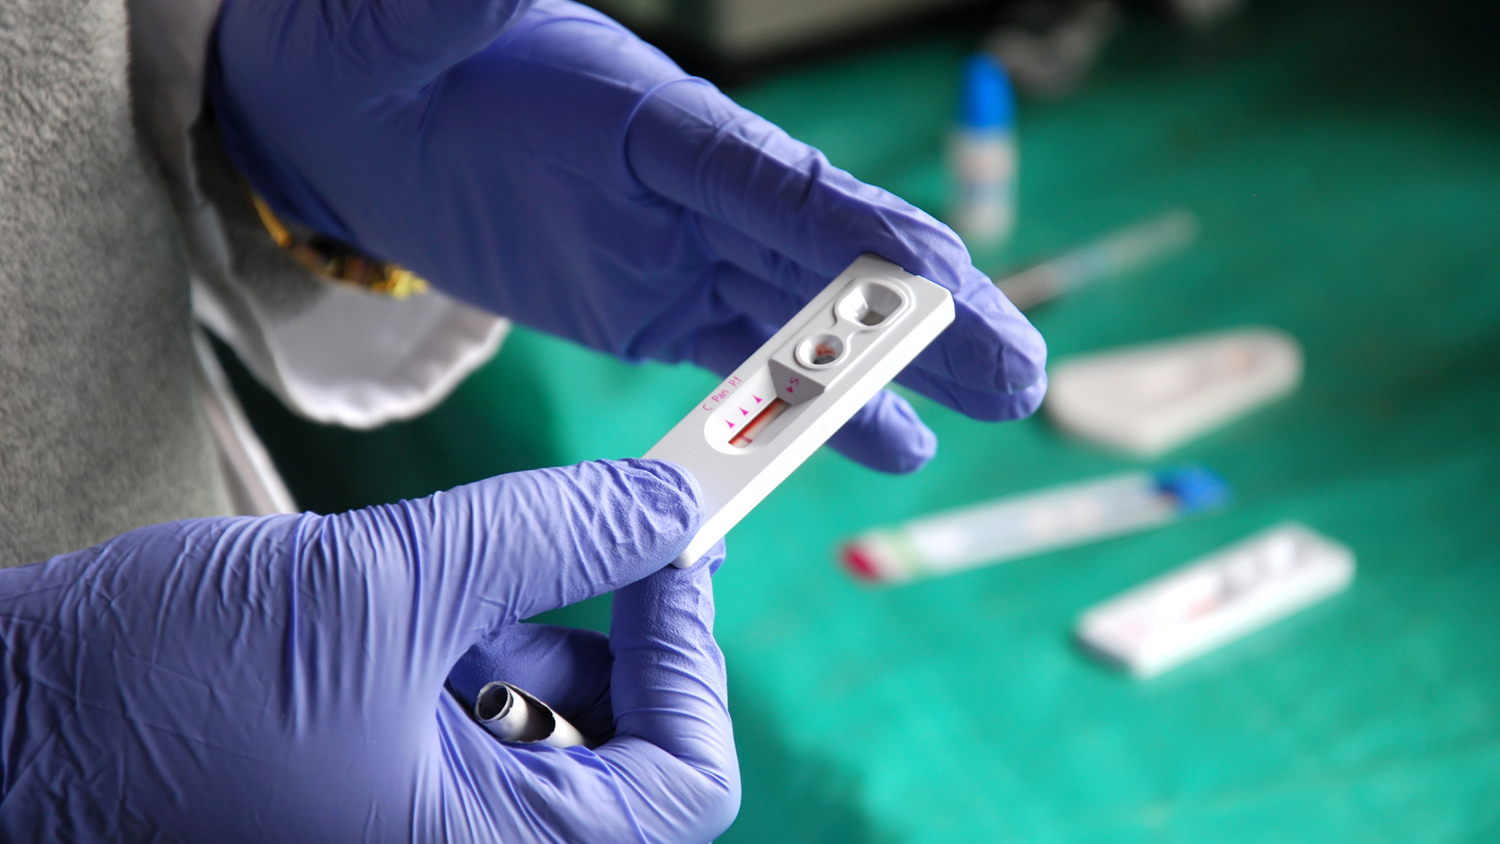 В Италии станет бесплатным лекарство для предотвращения заражения ВИЧ
